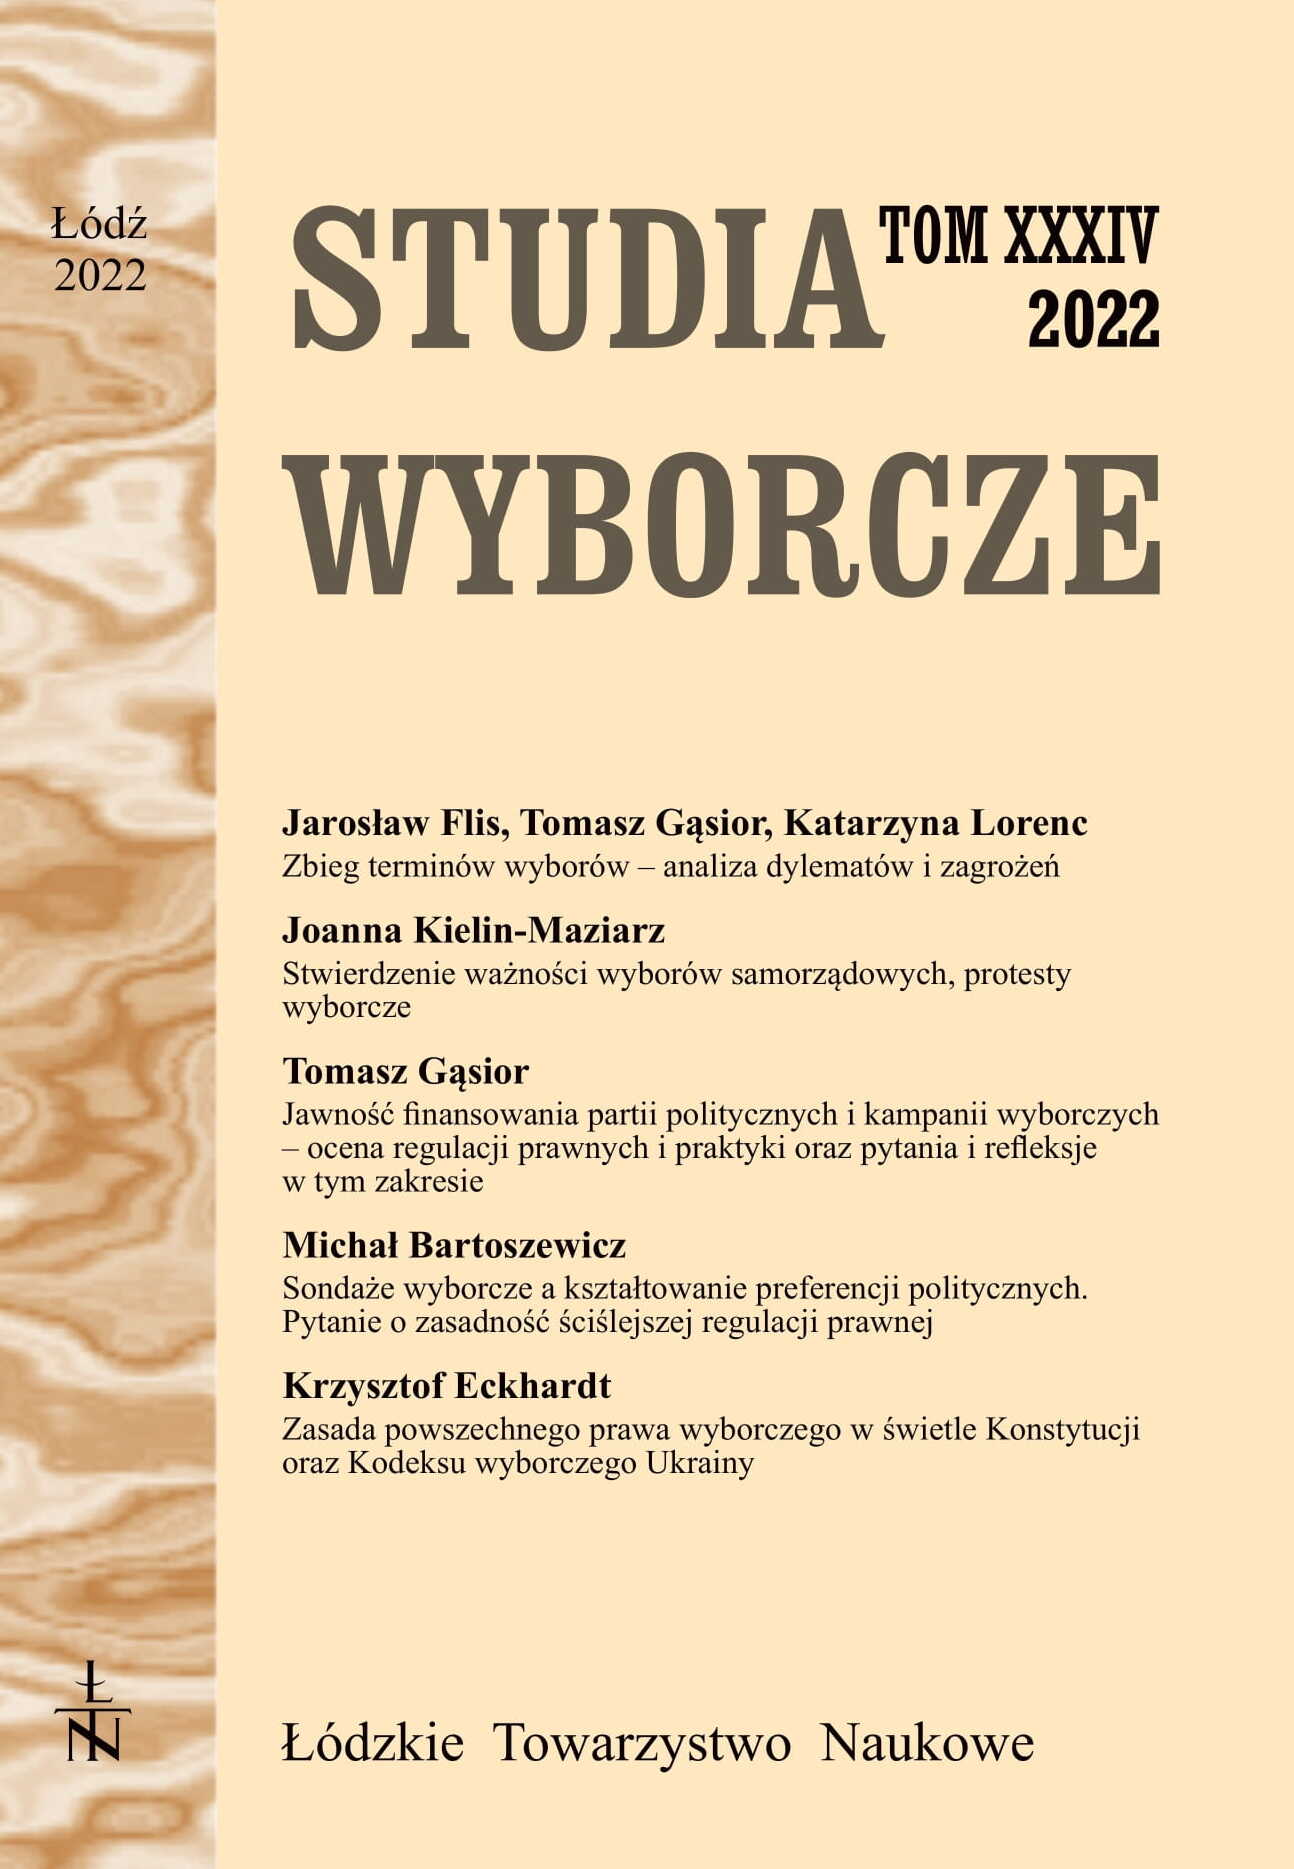 Polska bibliografia wyborczo-referendalna za rok 2021